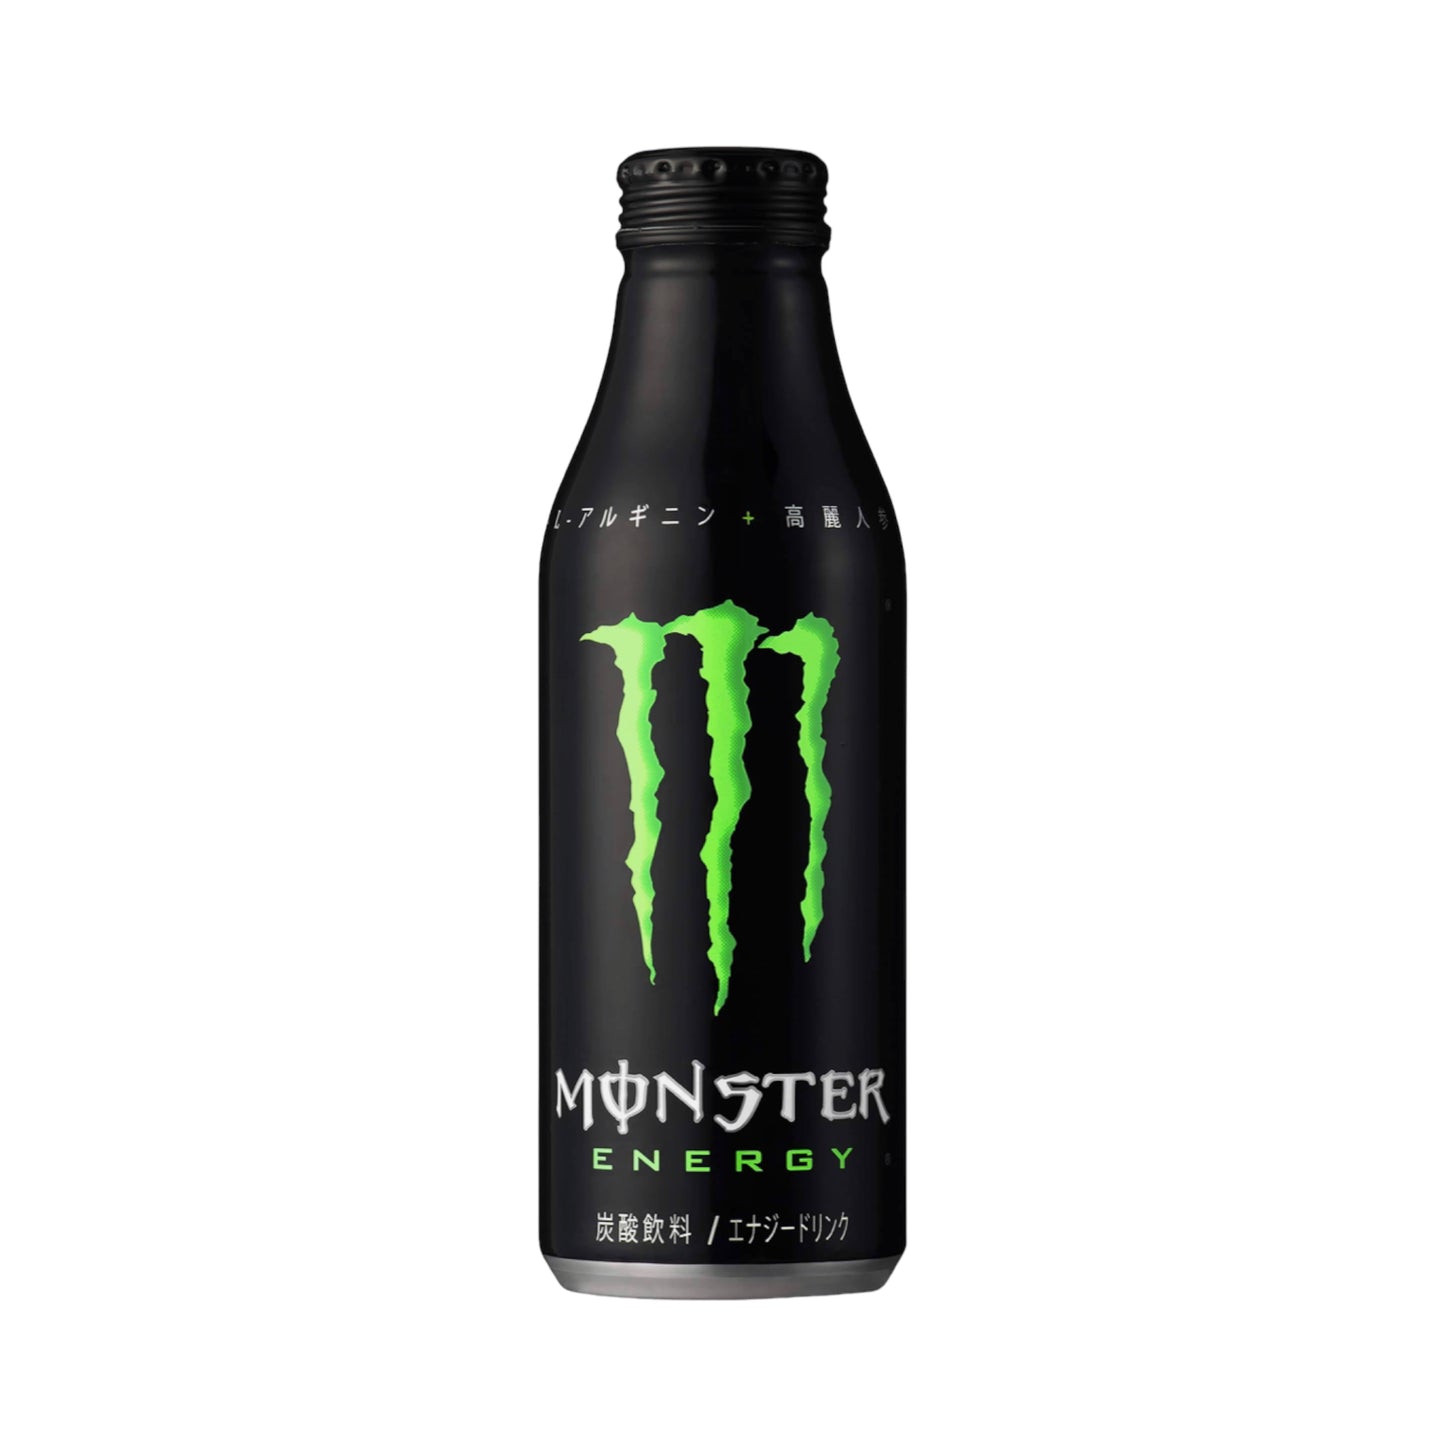 Monster Energy Bottle Can 16.9 fl oz (500ml)